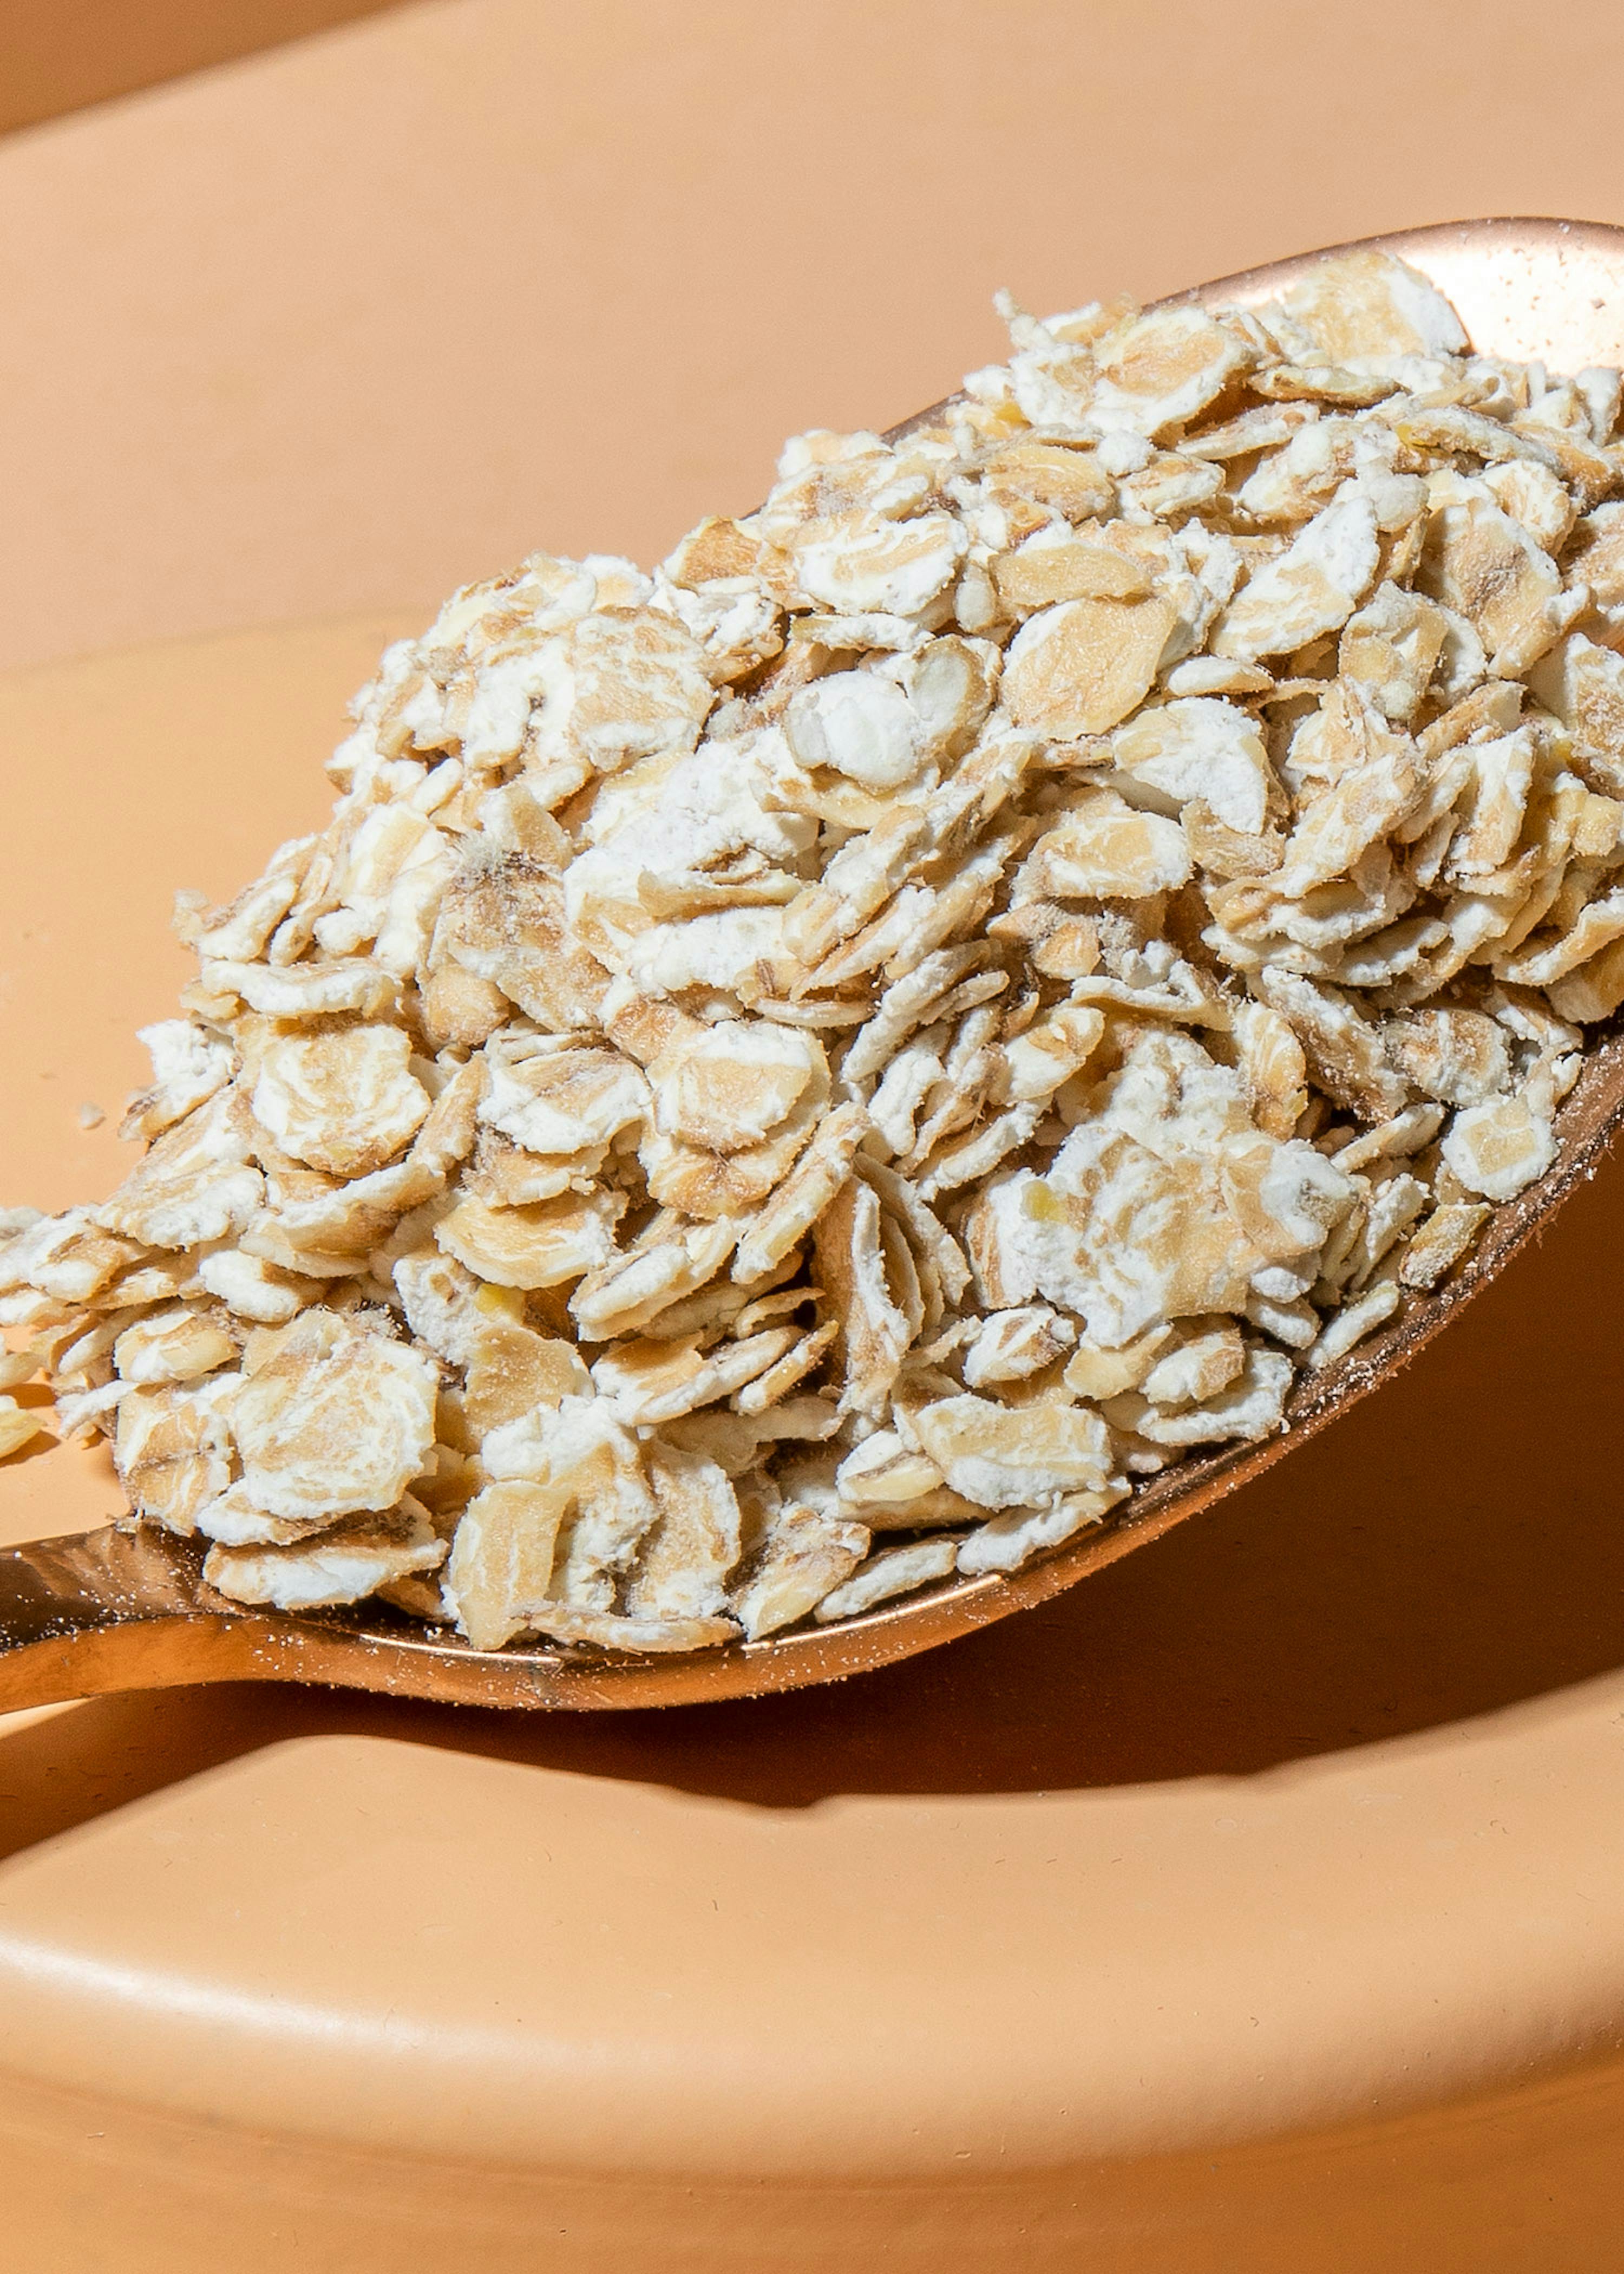 Flocon d'avoine sans gluten - fabricant granola bio - la main dans le bol